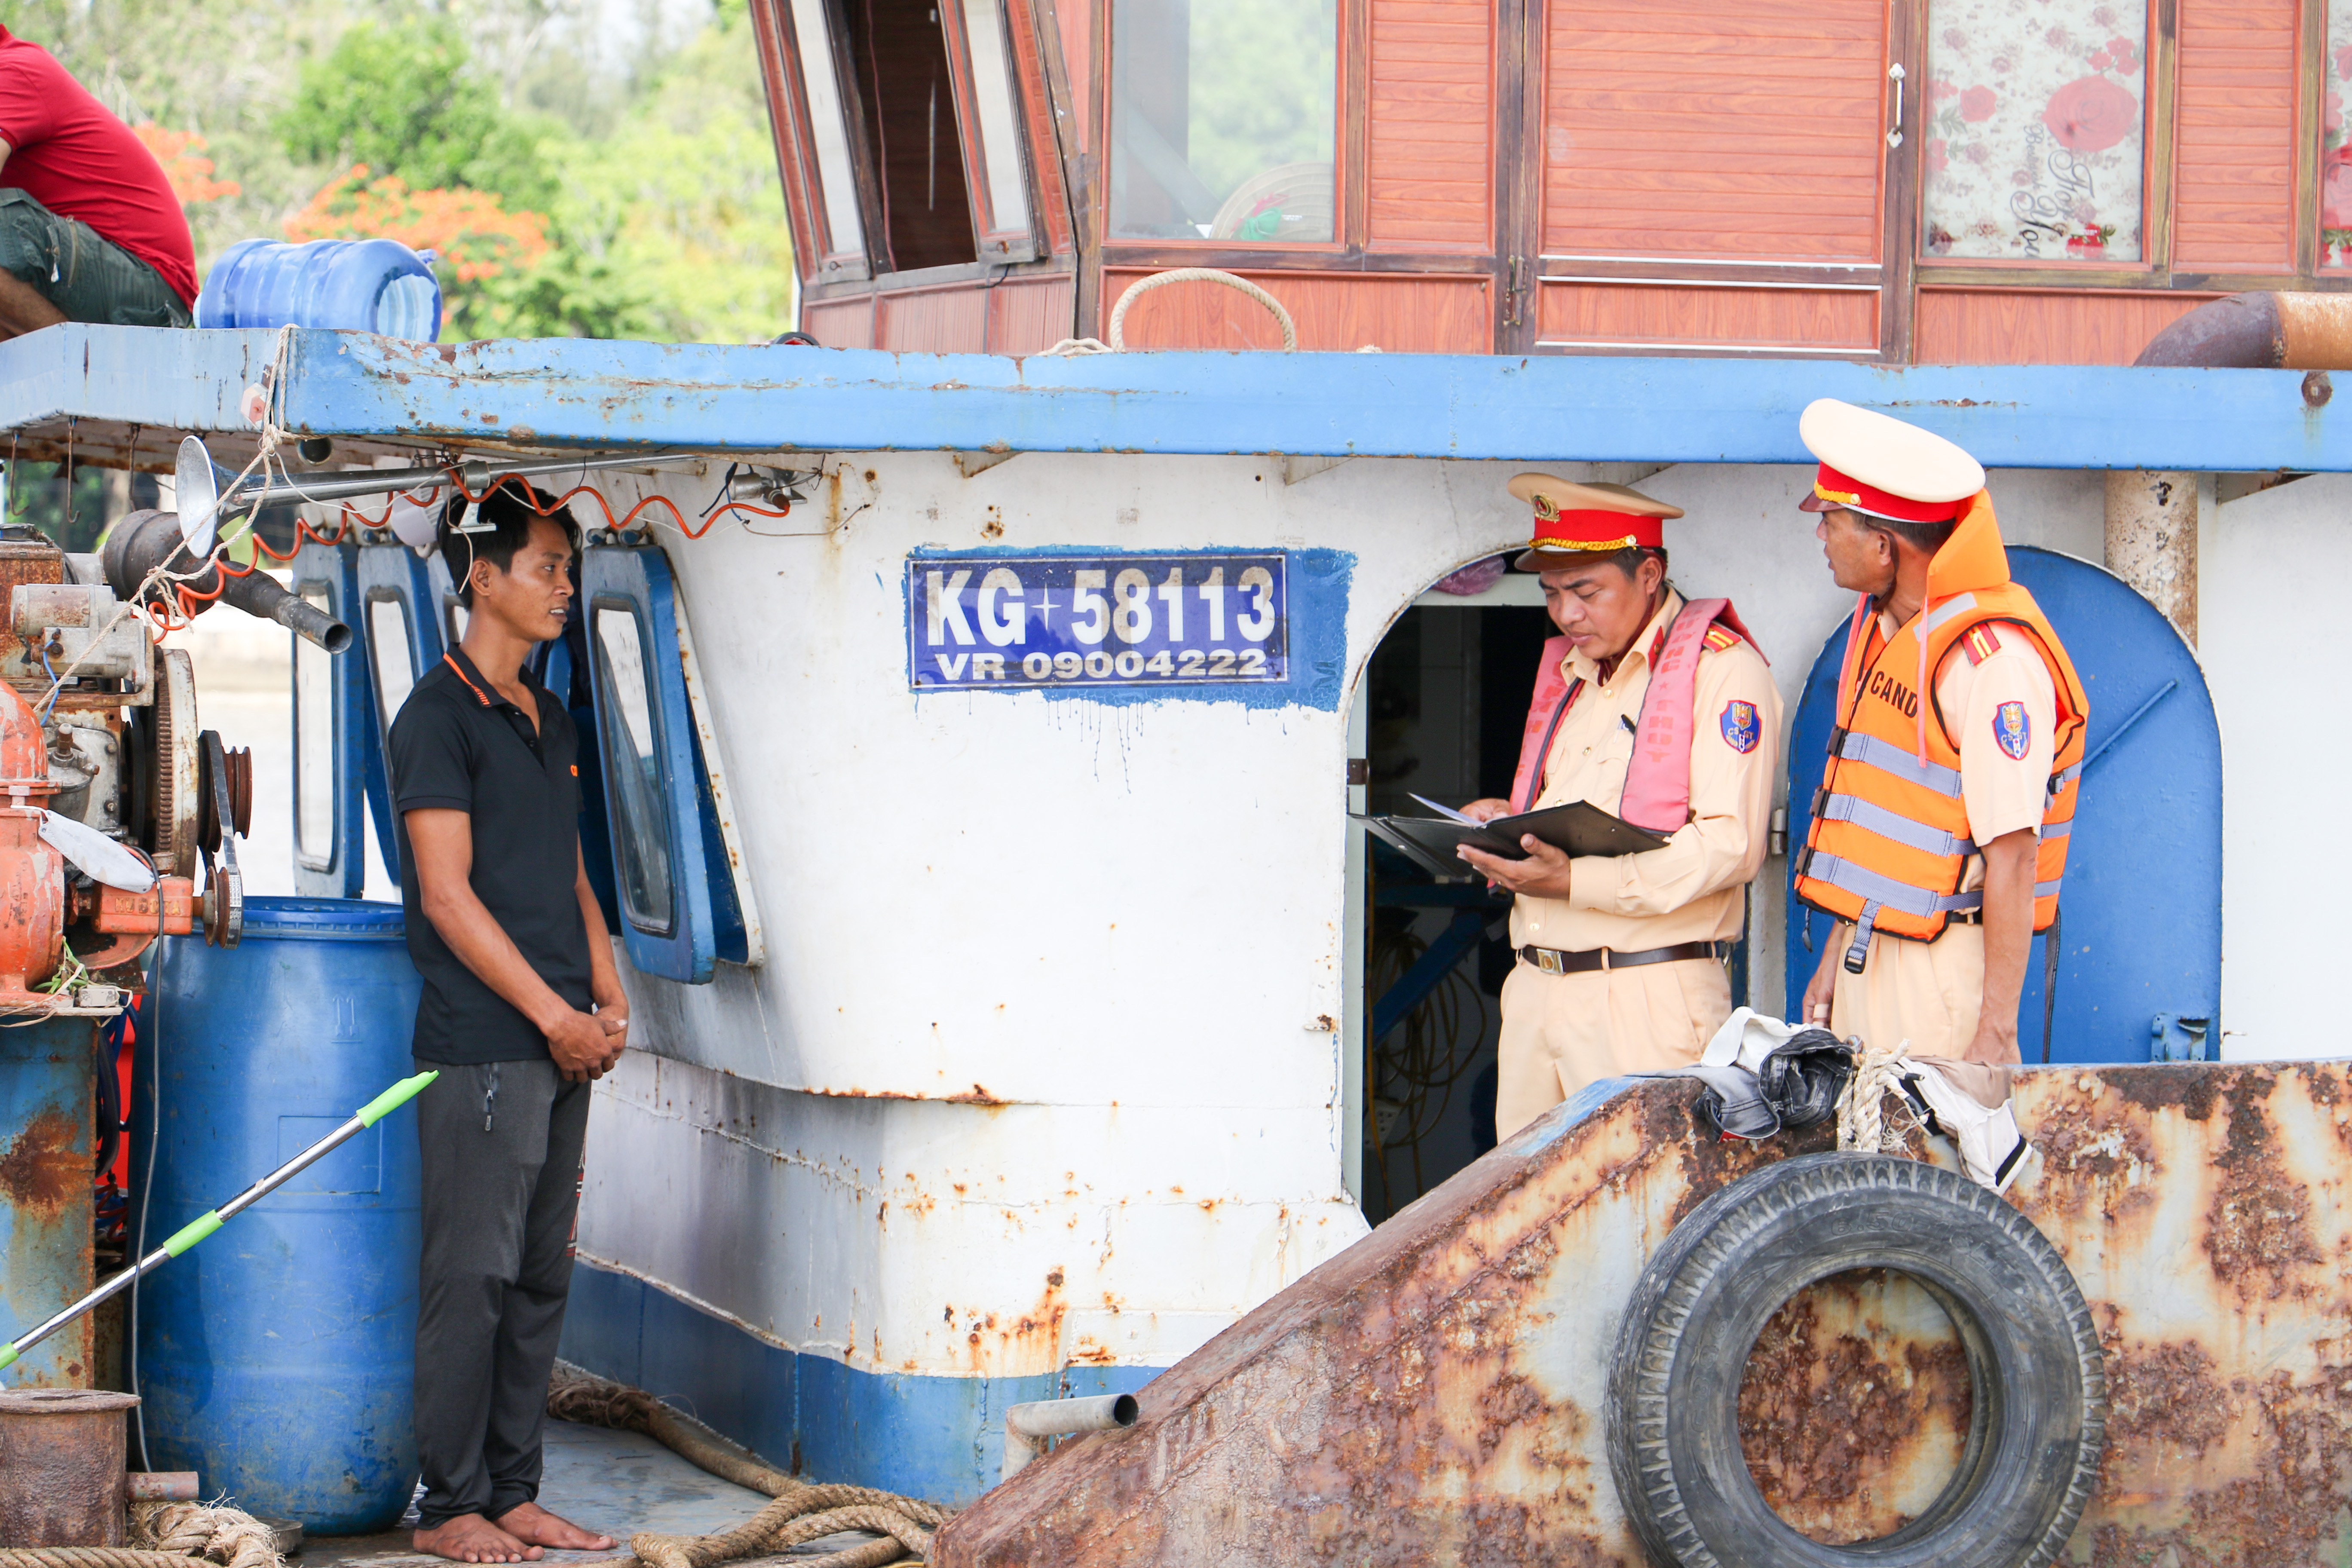 Phương tiện có biển số đăng ký KG-58113 do anh anh Du Văn Nhiều (bìa trái) điều khiển hiện đang được tạm giữ để xử lý theo quy định.